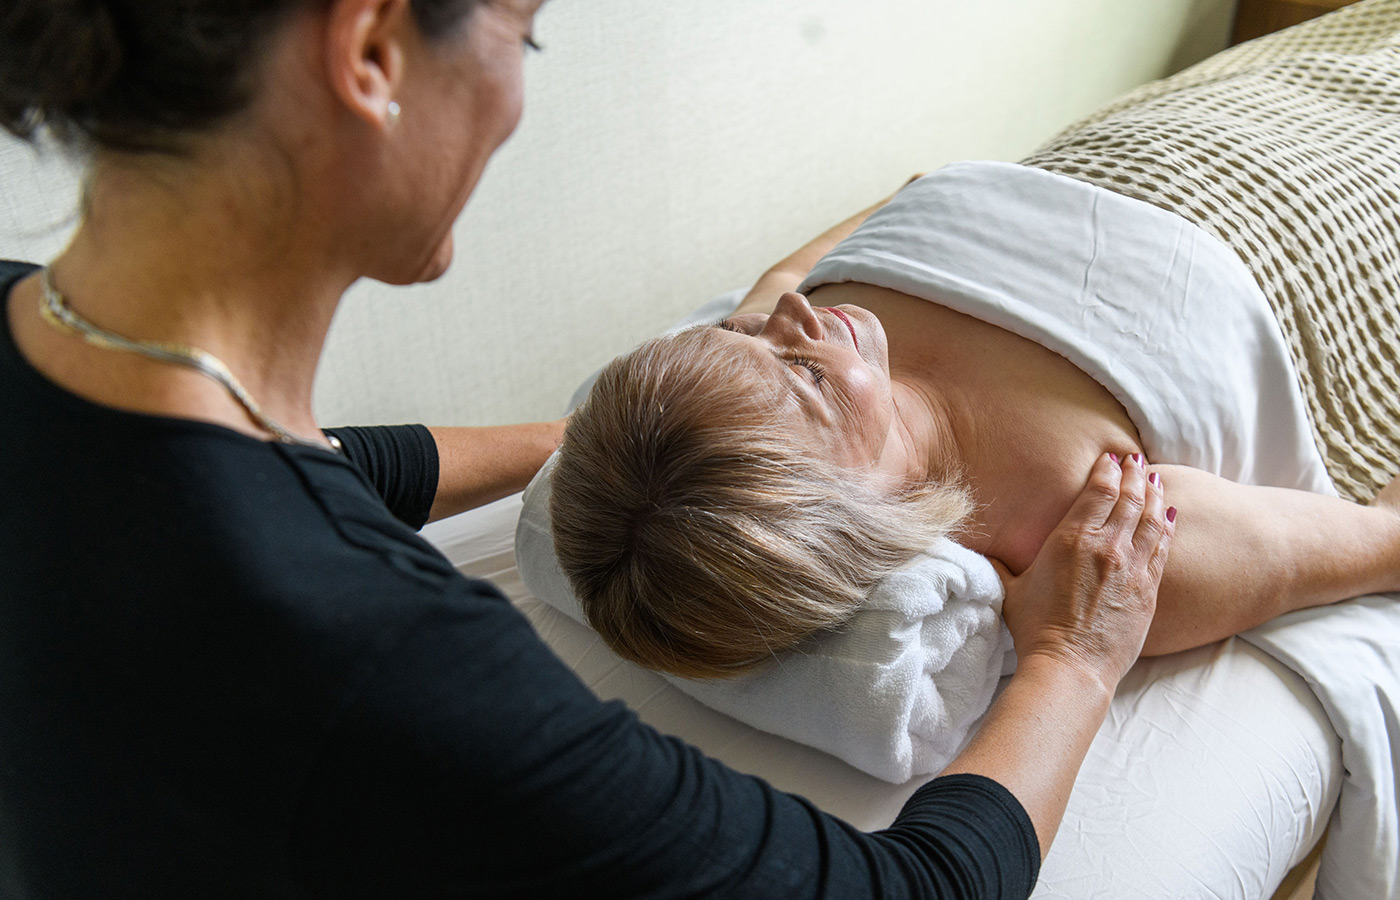 Woman gets massage by masseuse.
